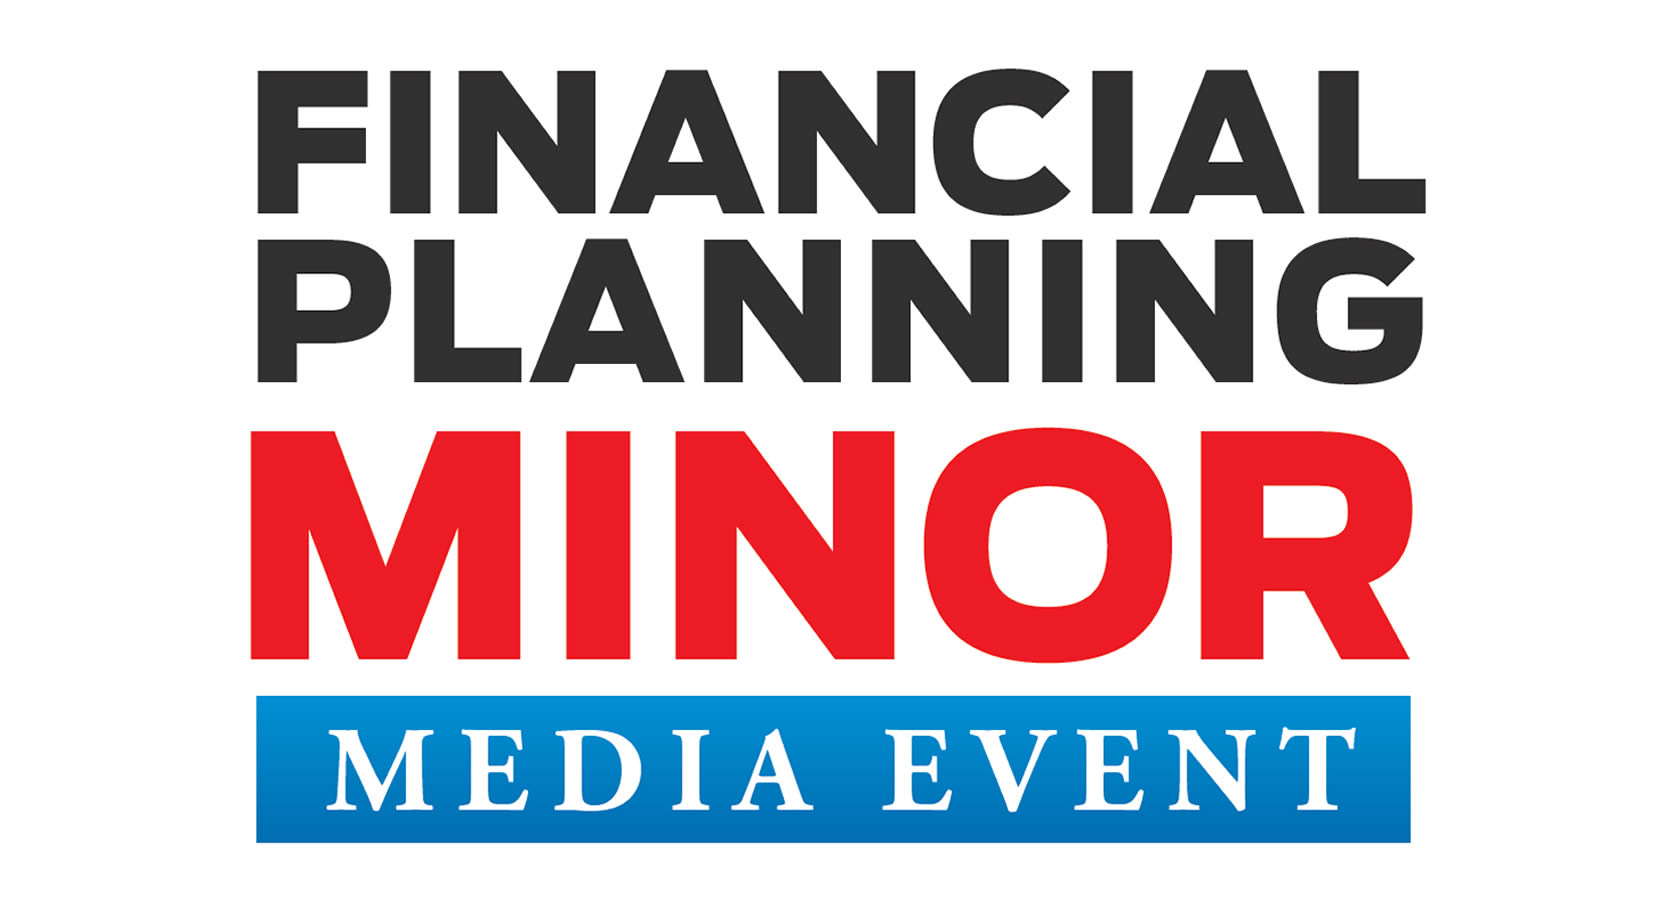 Financial Planning Minor